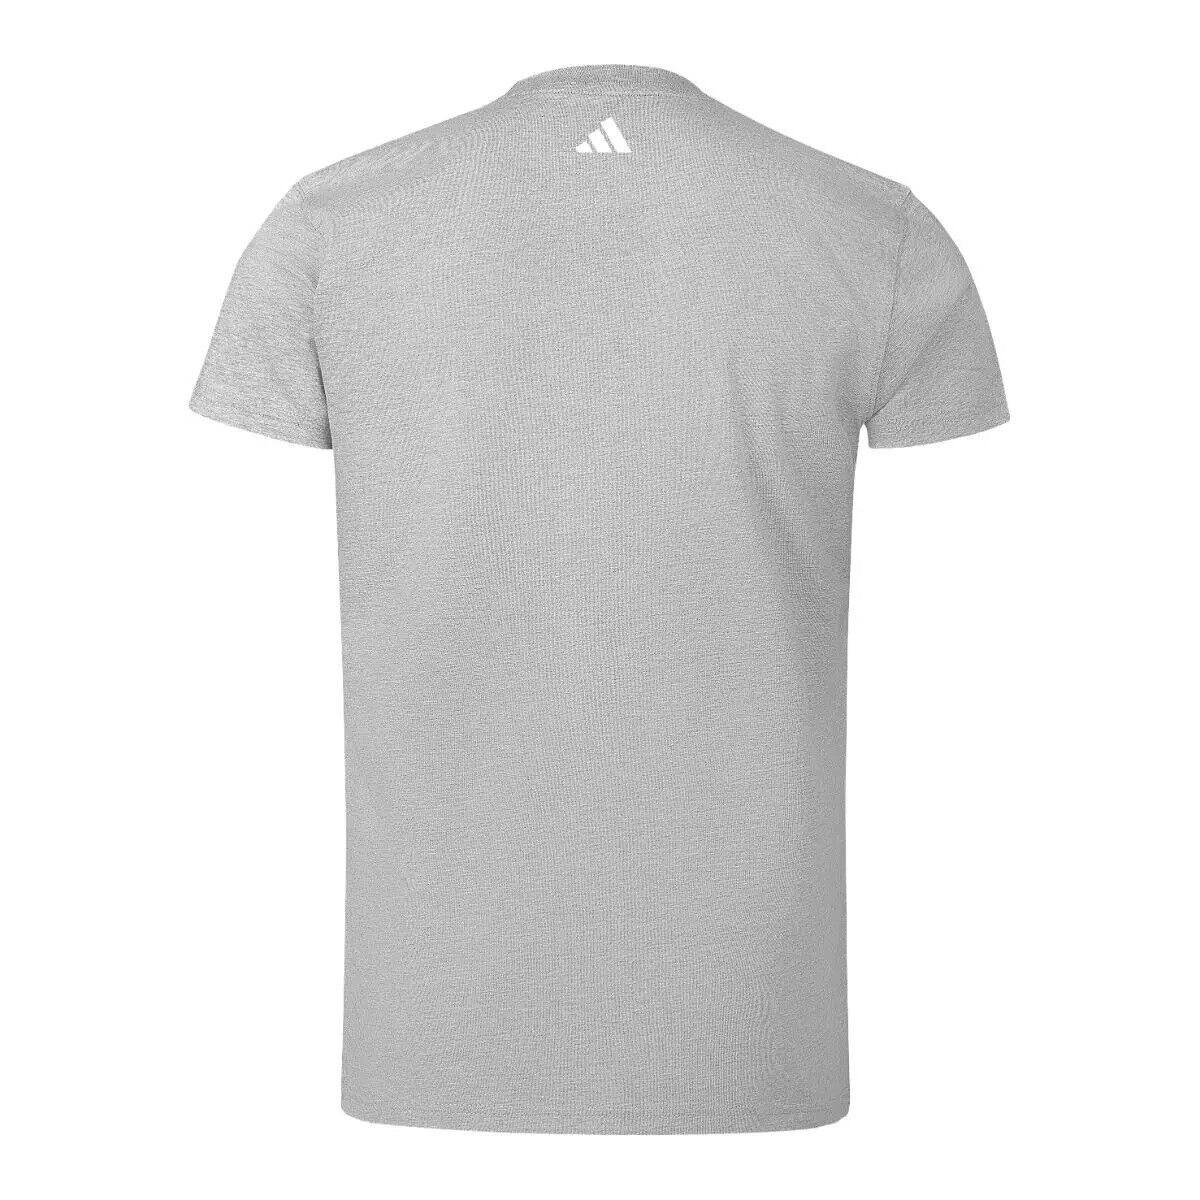 adidas Mens Boxing T-Shirt Grey